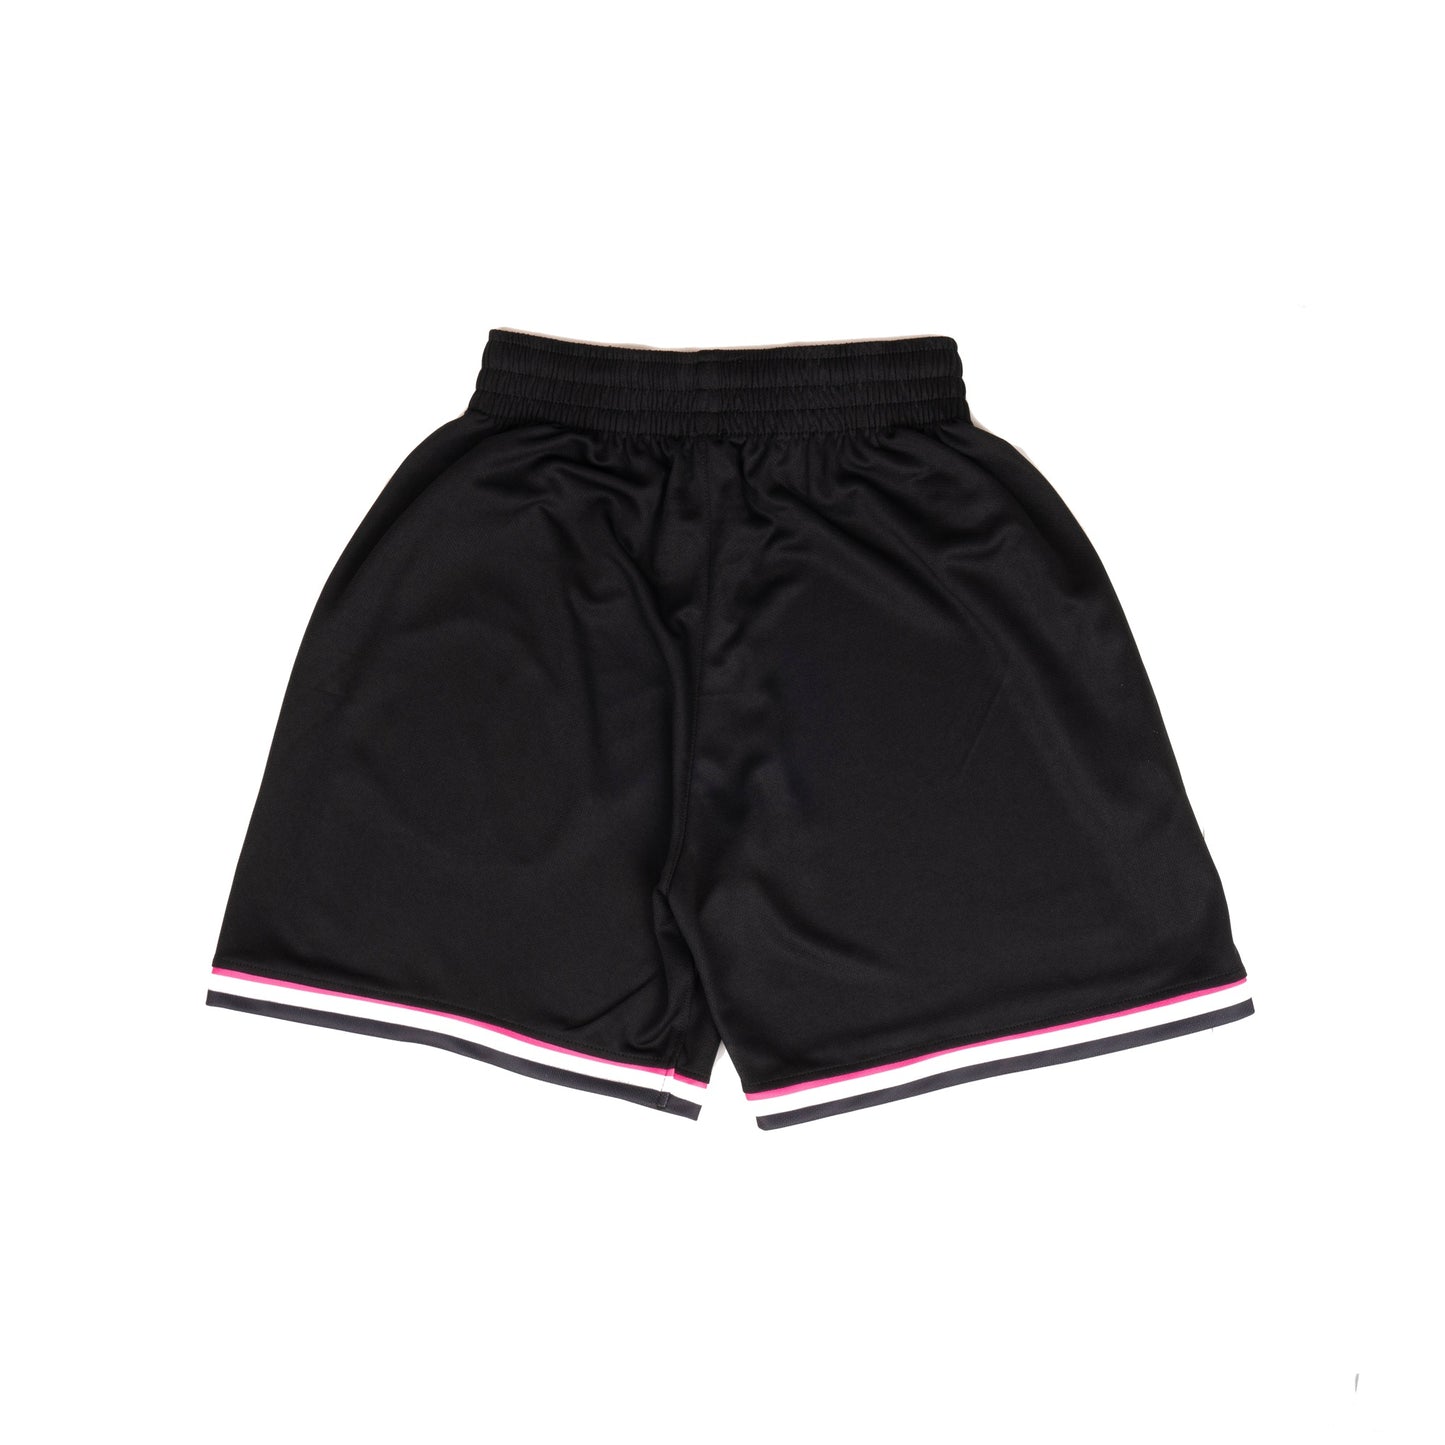 AZA Short Pants Basketball Box Multicolour - Black